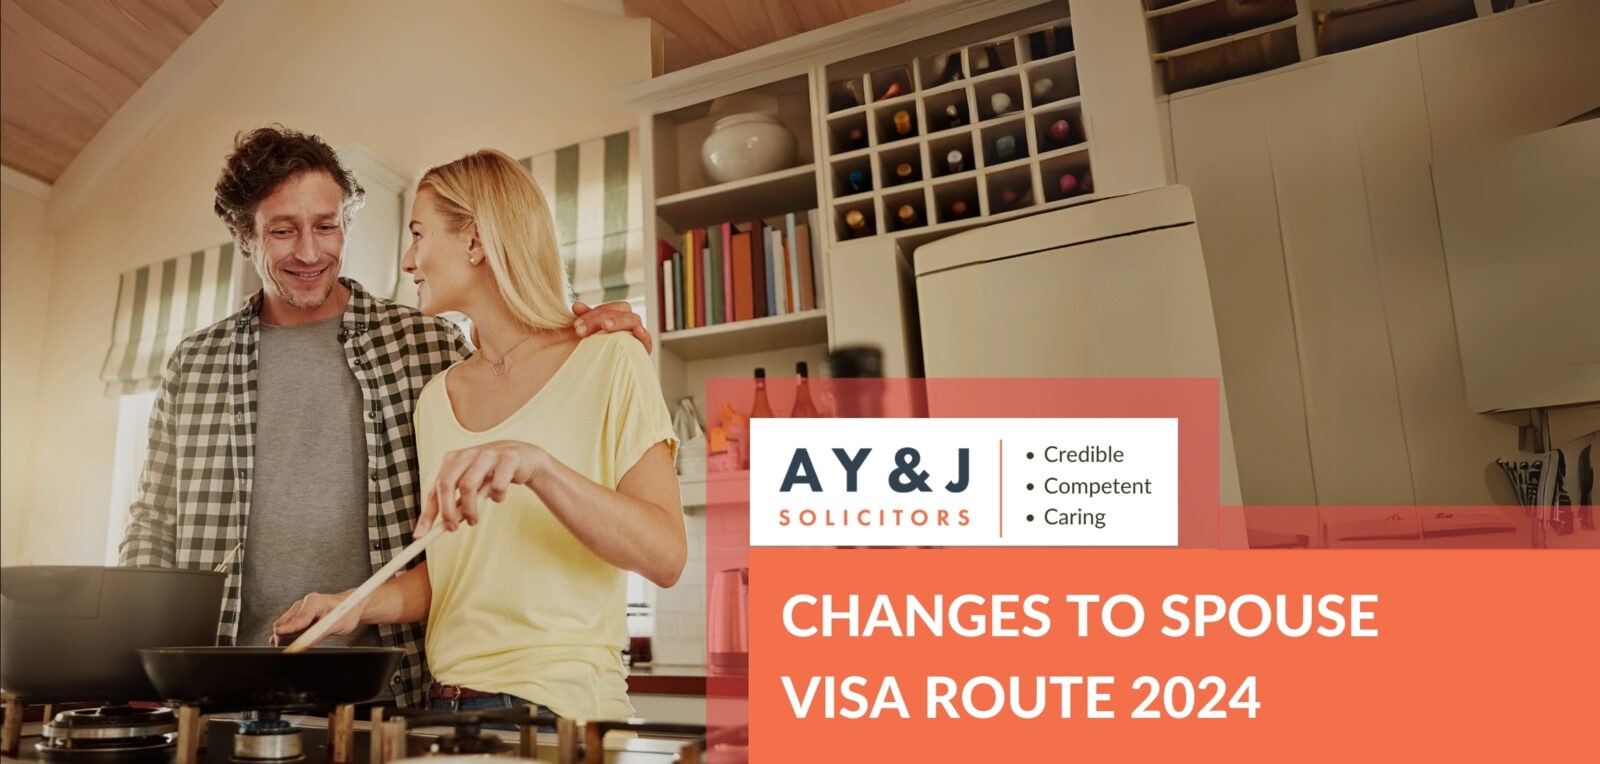 spouse visa changes 2024